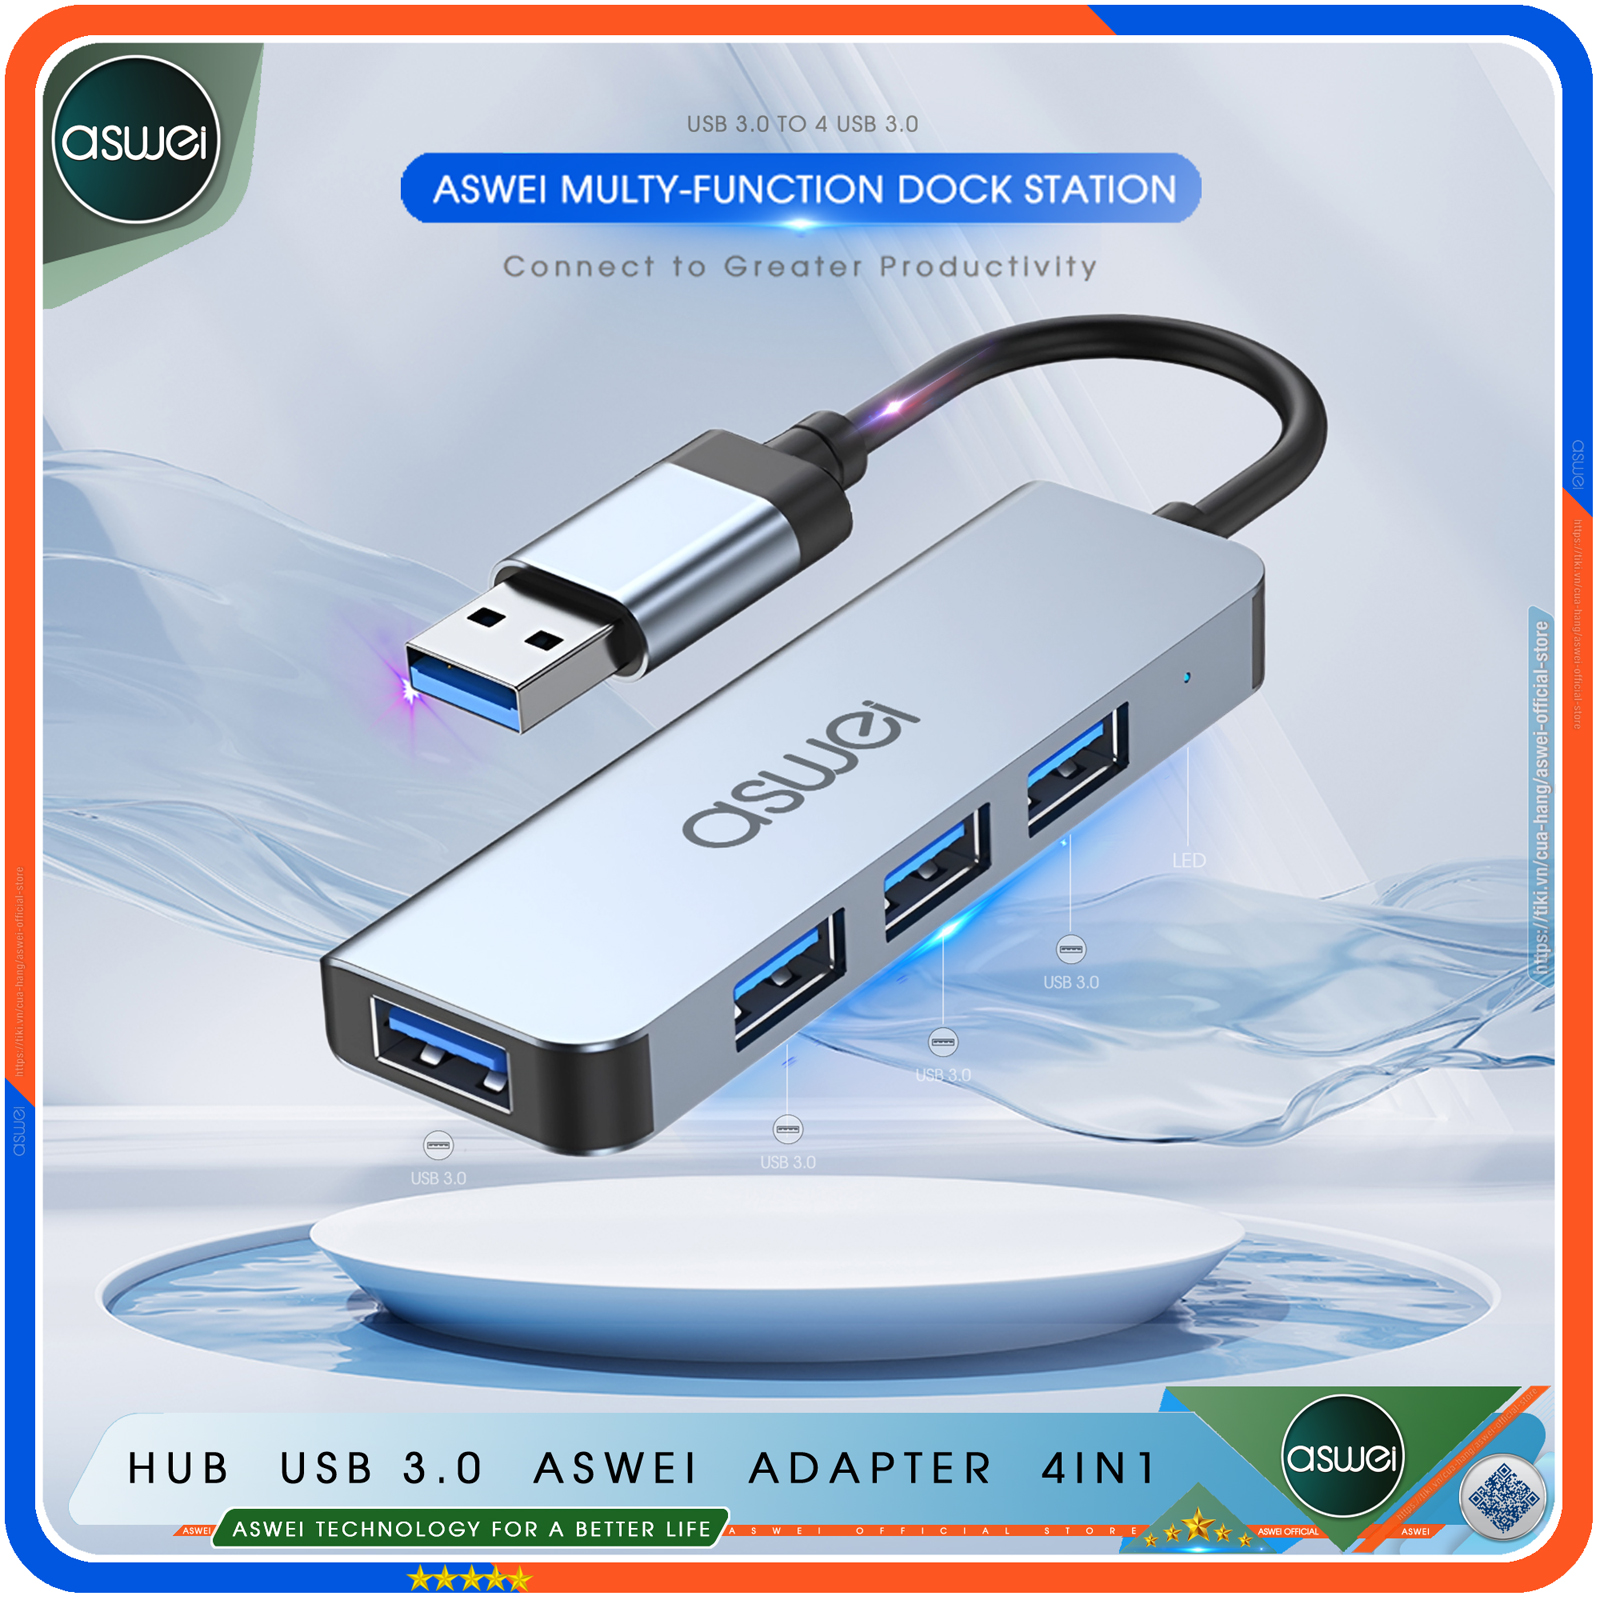 Hub USB 3.0 ASWEI 4 in 1 - Bộ Chia USB Tốc Độ Cao 4 Cổng - Hub Chuyển Đổi USB Type-C Dành Cho Macbook, Laptop, PC, Máy Tính Bảng, Điện Thoại - Hàng Chính Hãng